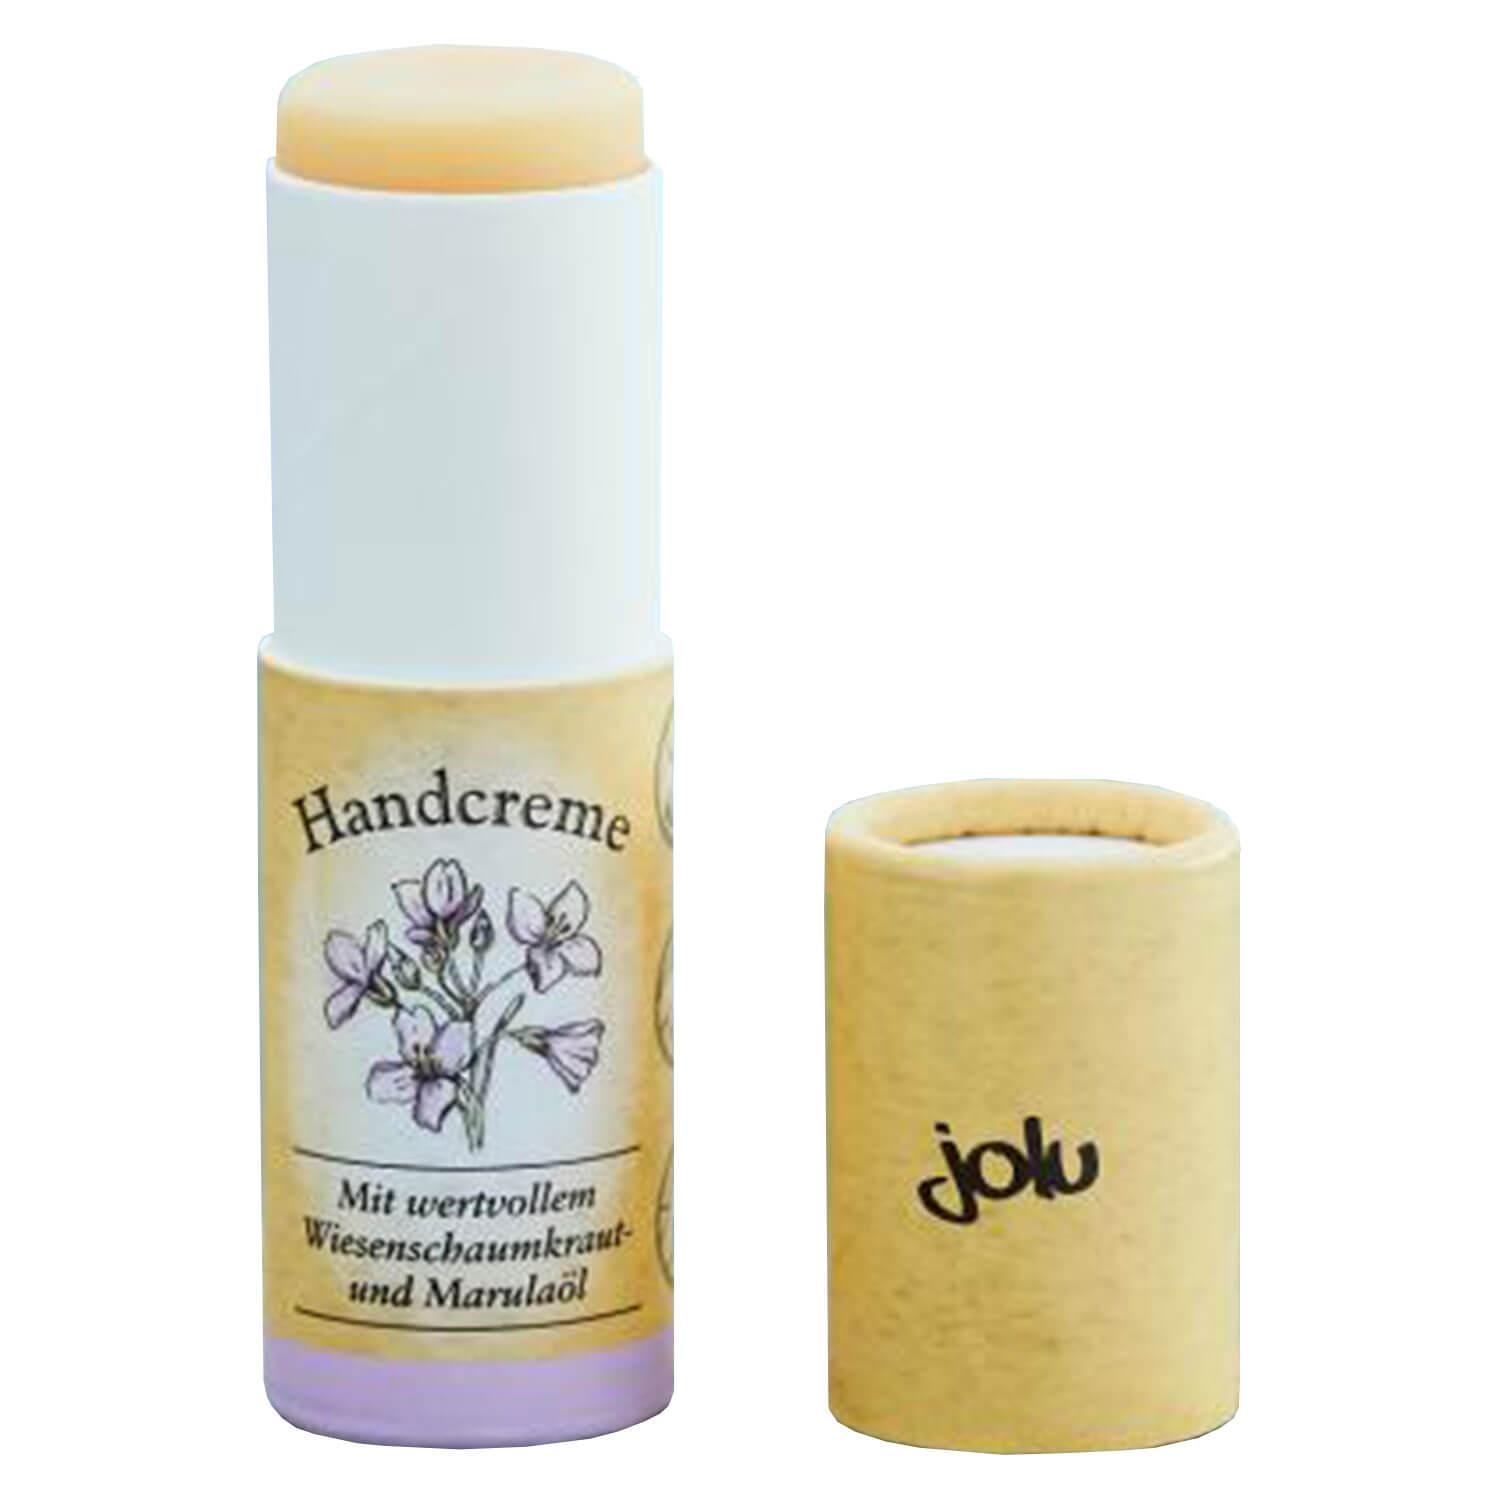 jolu - Hand Cream Stick